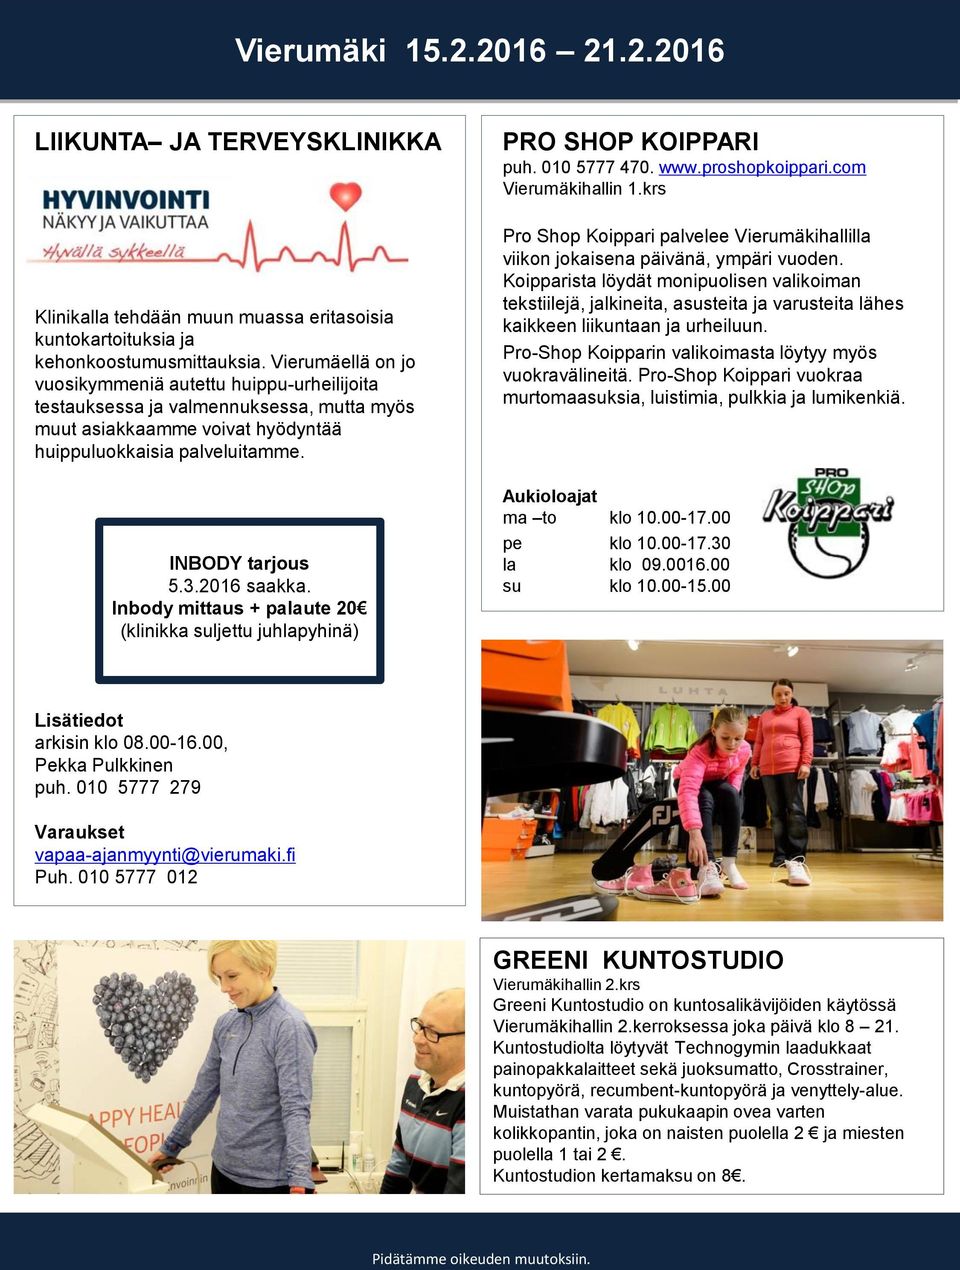 Inbody mittaus + palaute 20 (klinikka suljettu juhlapyhinä) PRO SHOP KOIPPARI puh. 010 5777 470. www.proshopkoippari.com Vierumäkihallin 1.